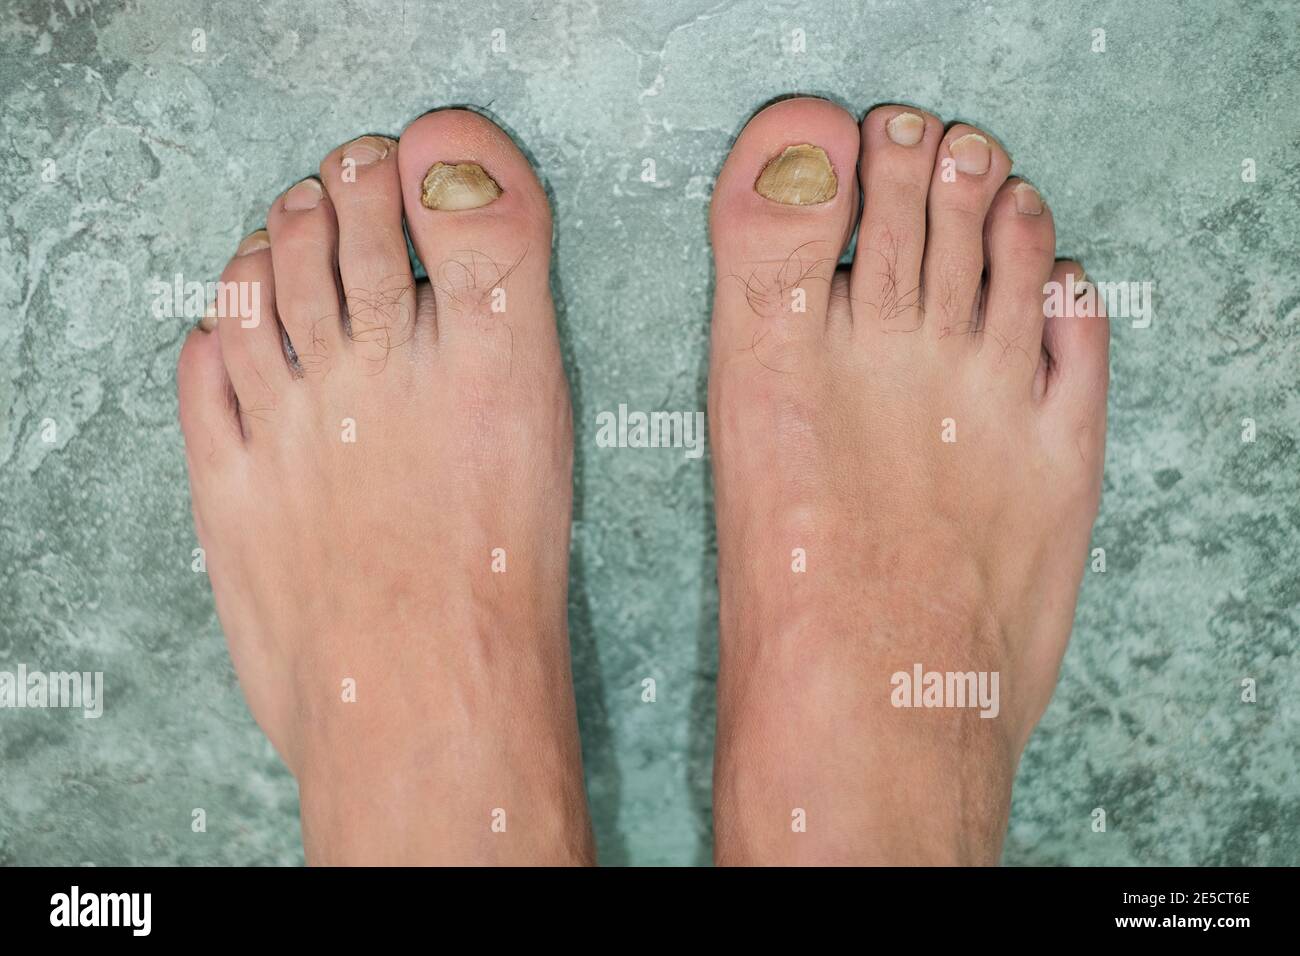 Hombre joven descalzo dedos con uñas enfermas de micosis onycho,dermatologic medical enfermedad, problema de salud Foto de stock